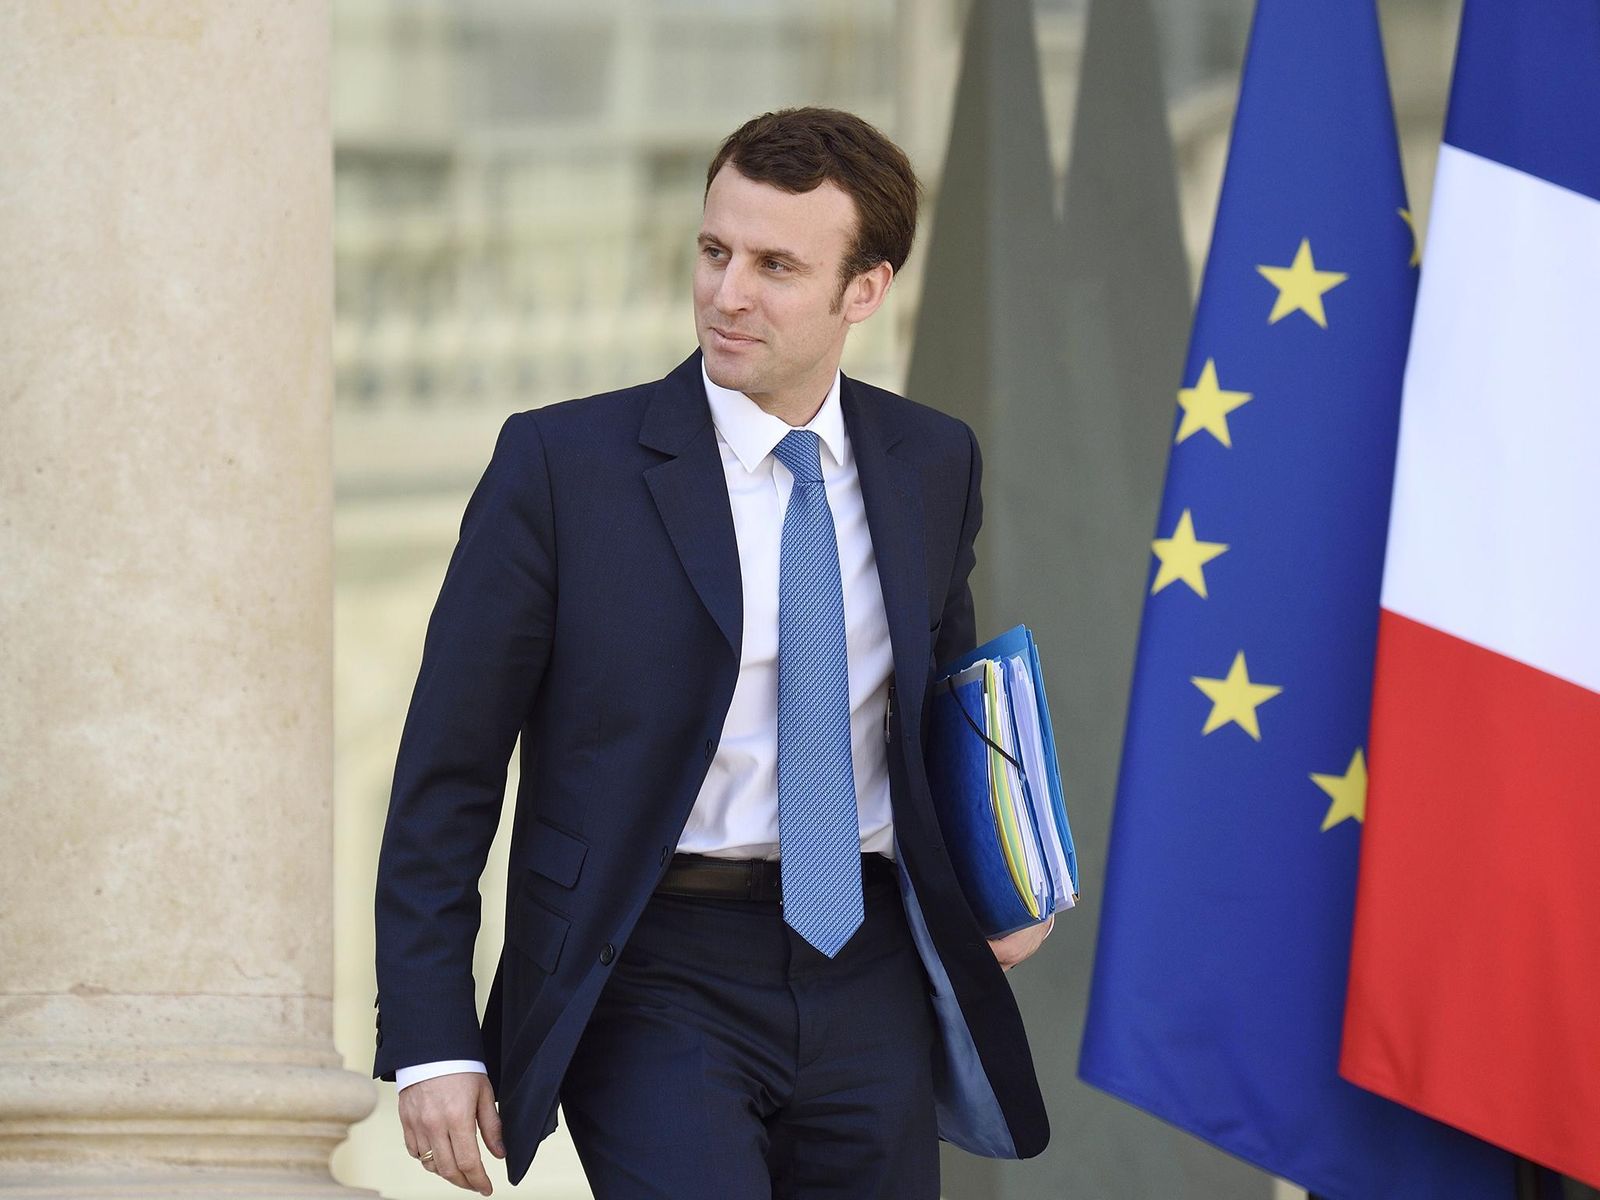 "El mundo está perdiendo la batalla contra el cambio climático", dice Macron